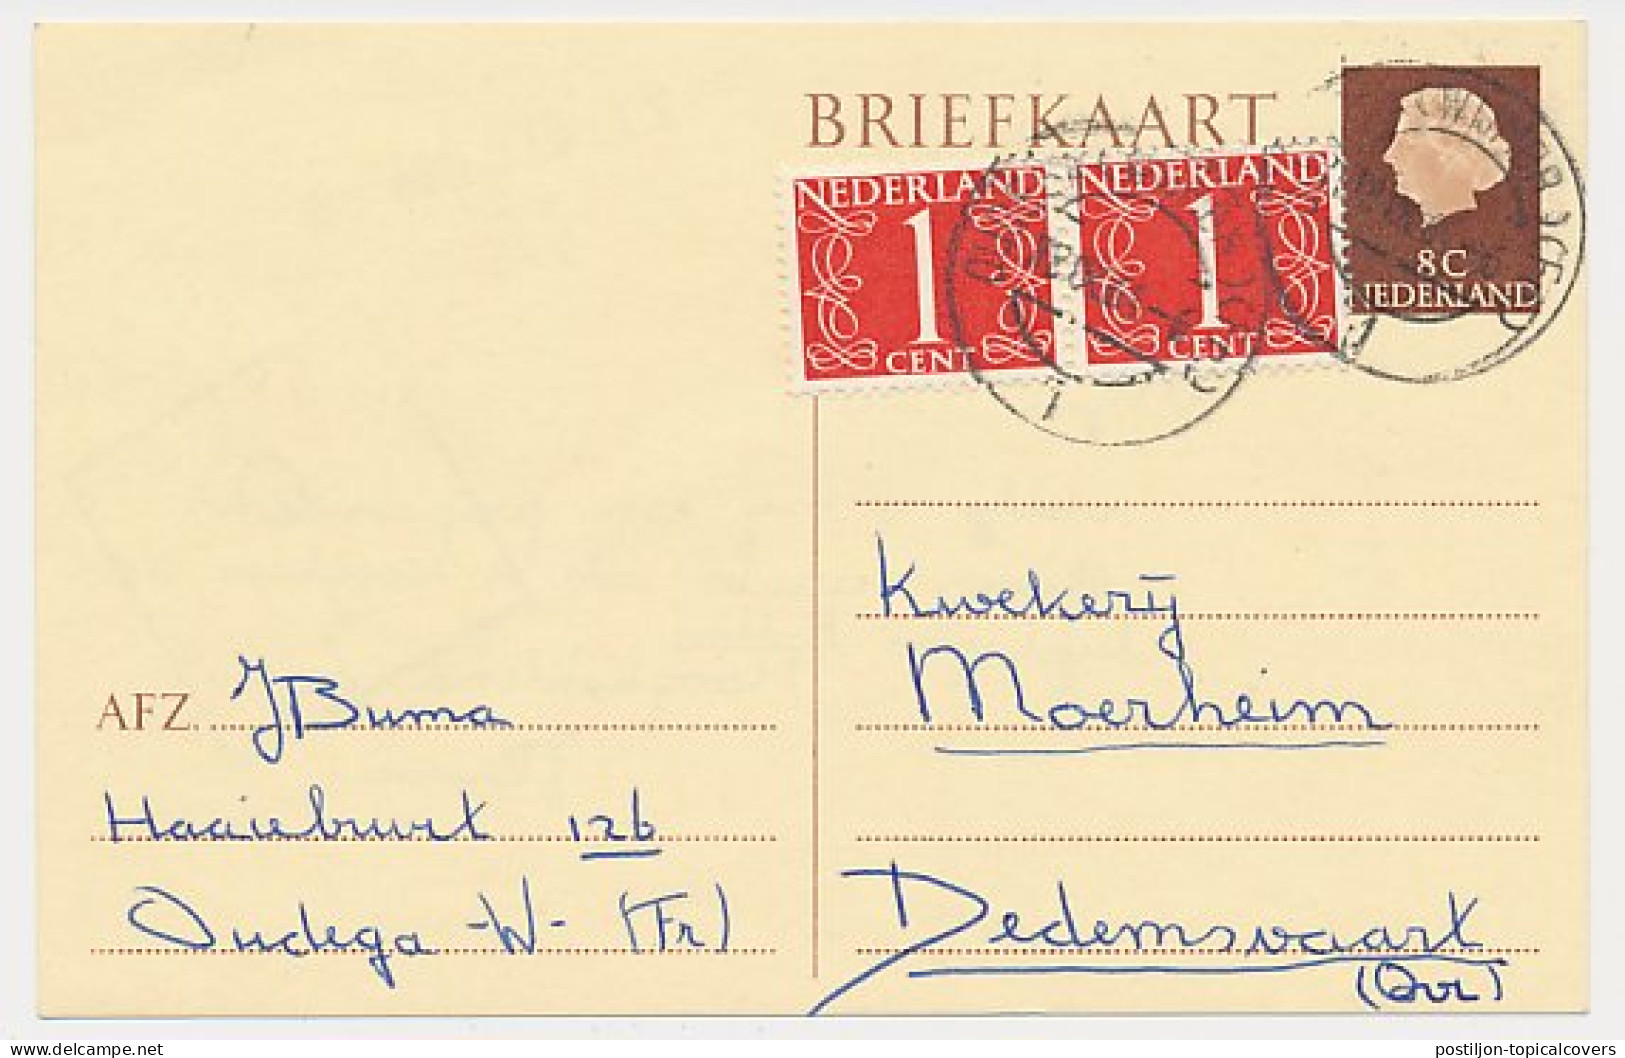 Briefkaart G. 325 / Bijfrankering Oudega - Dedemsvaart 1964 - Entiers Postaux